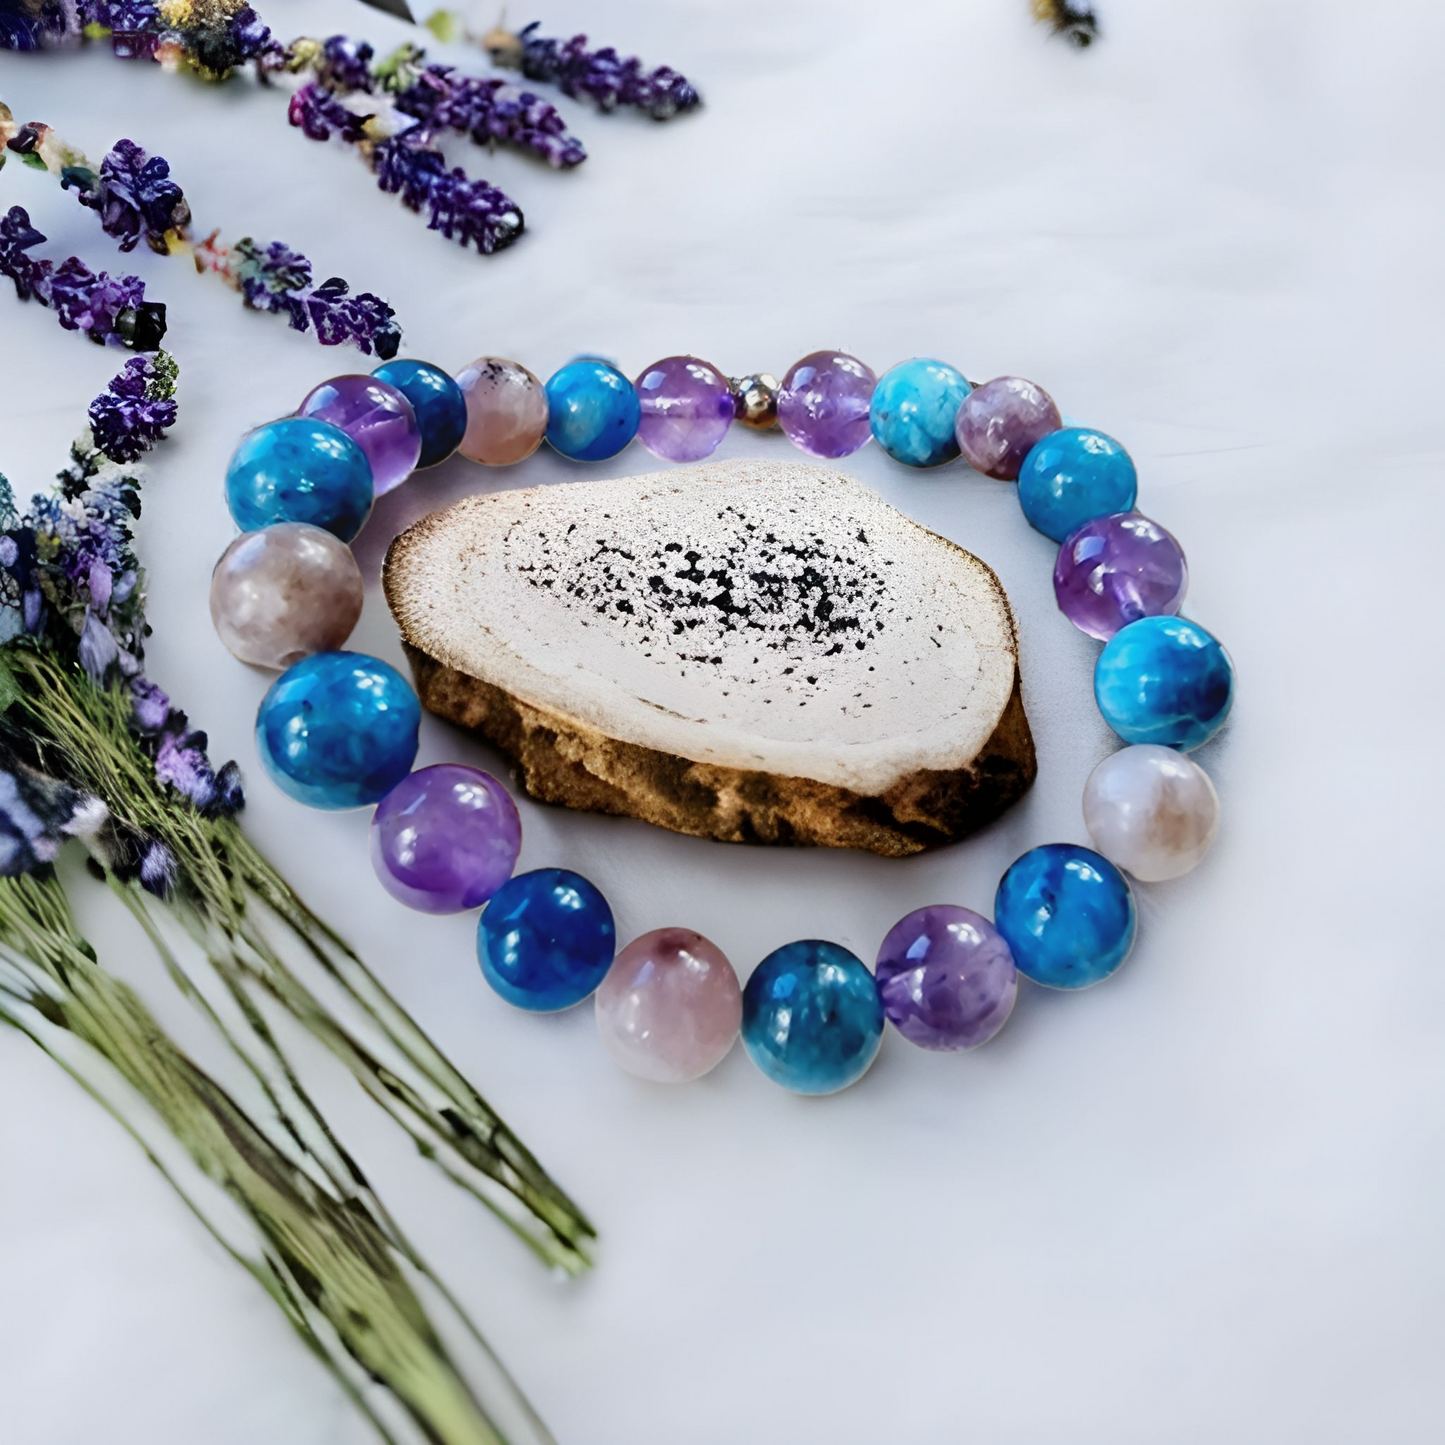 Coeur de perles, magasin de bracelets personnalisés en pierre semi-précieuses. Bracelets astrologiques, bien-être, chemin de vie